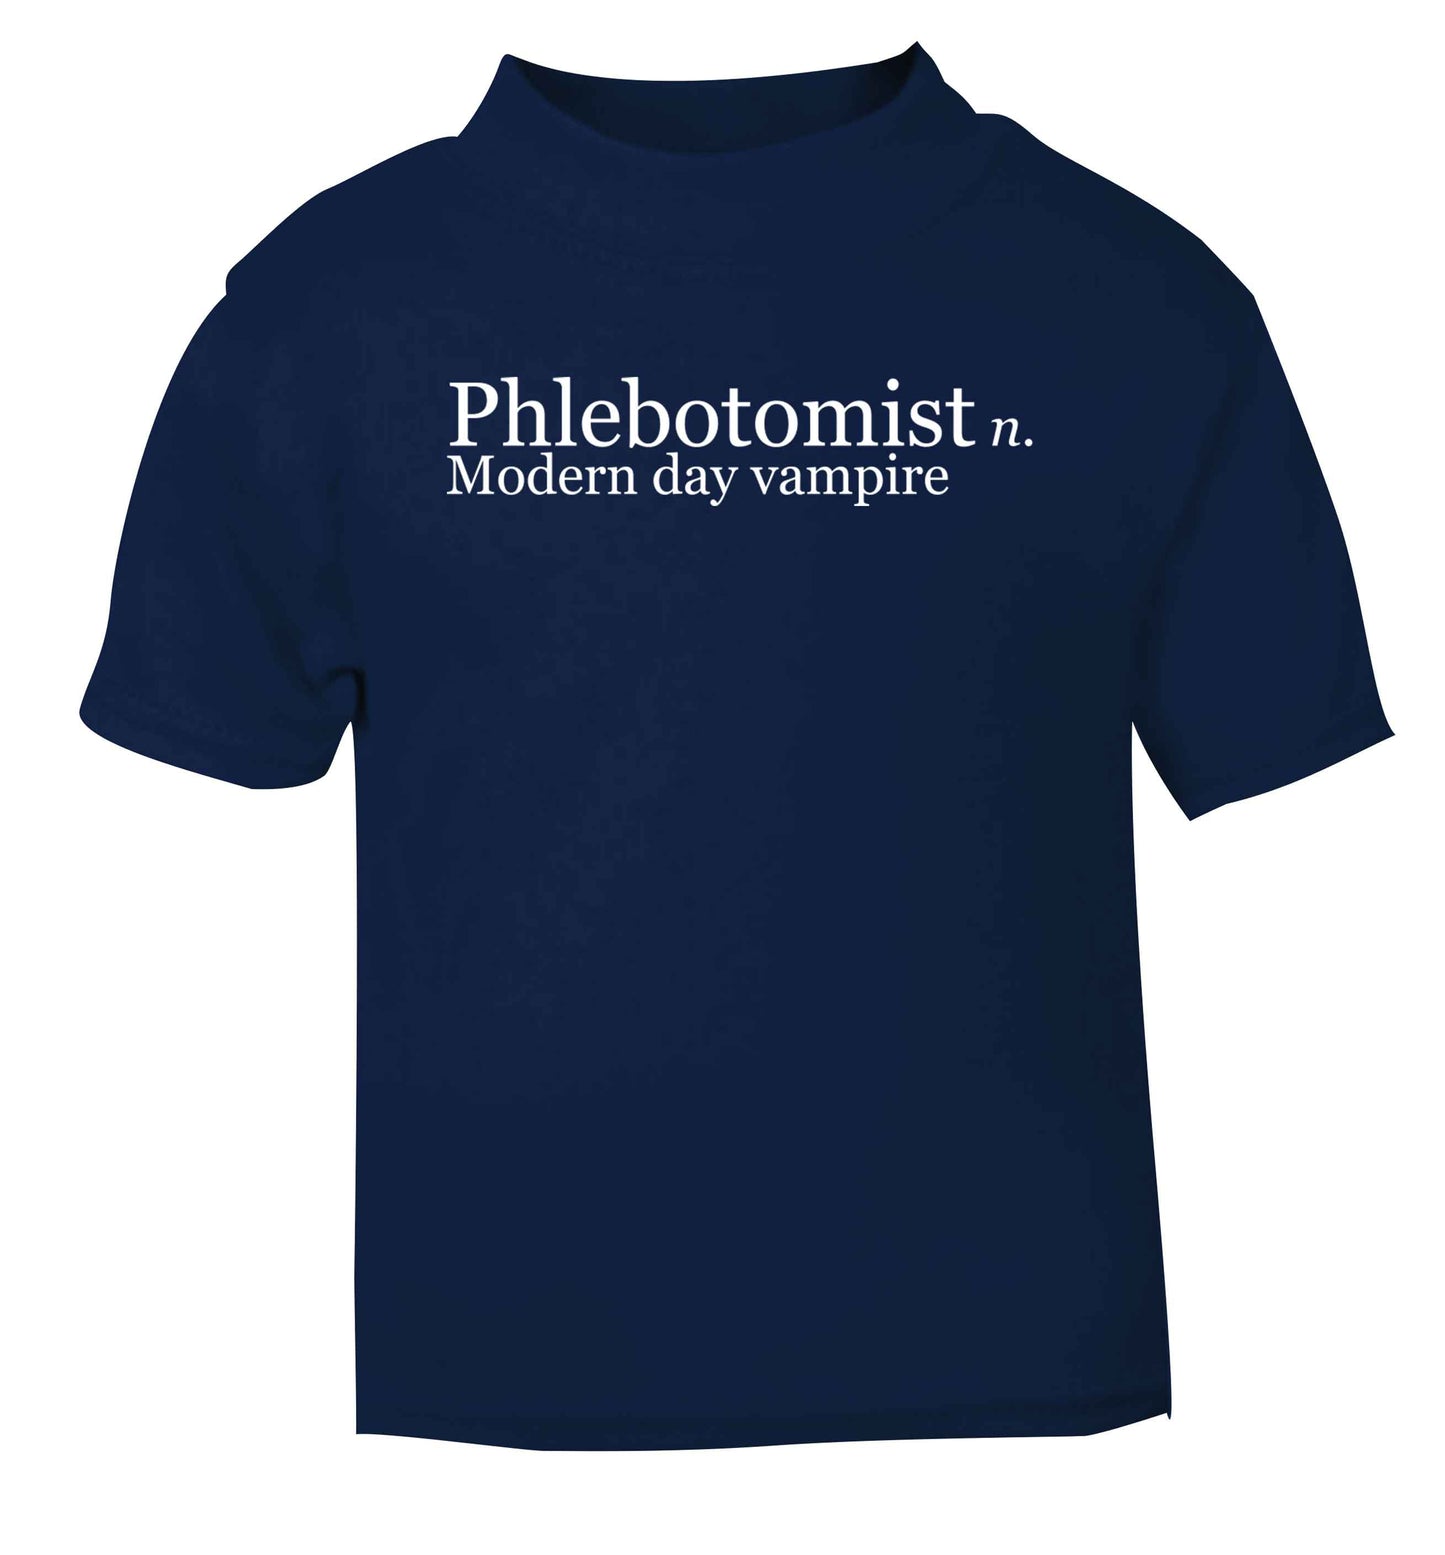 Phlebotomist - Modern day vampire navy baby toddler Tshirt 2 Years